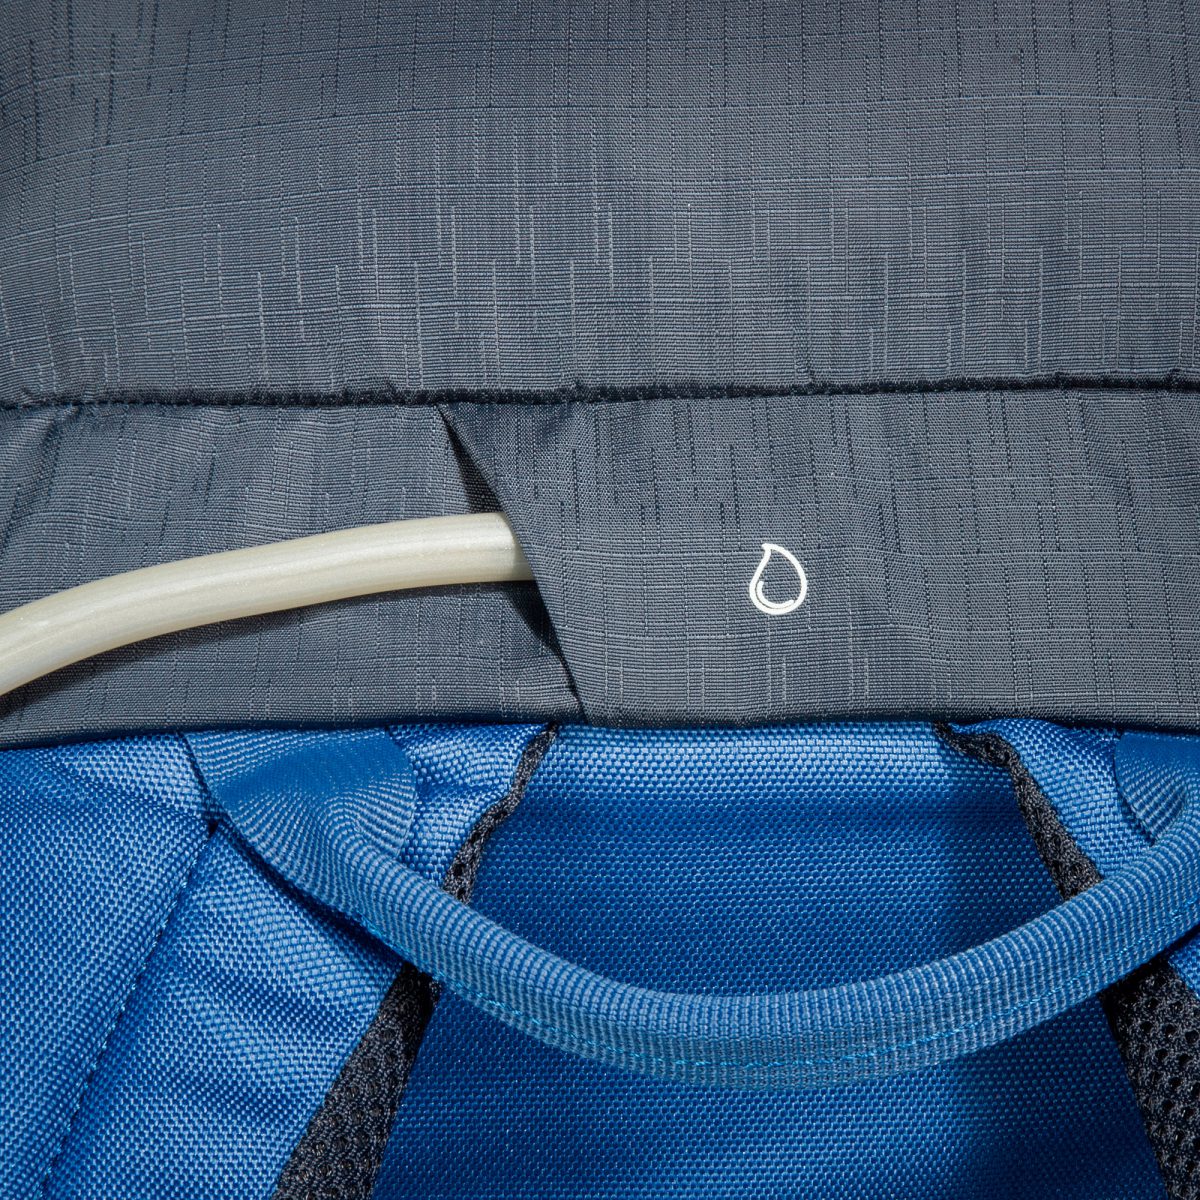 Спортивный рюкзак с вентилируемой спиной. Tatonka Storm 30